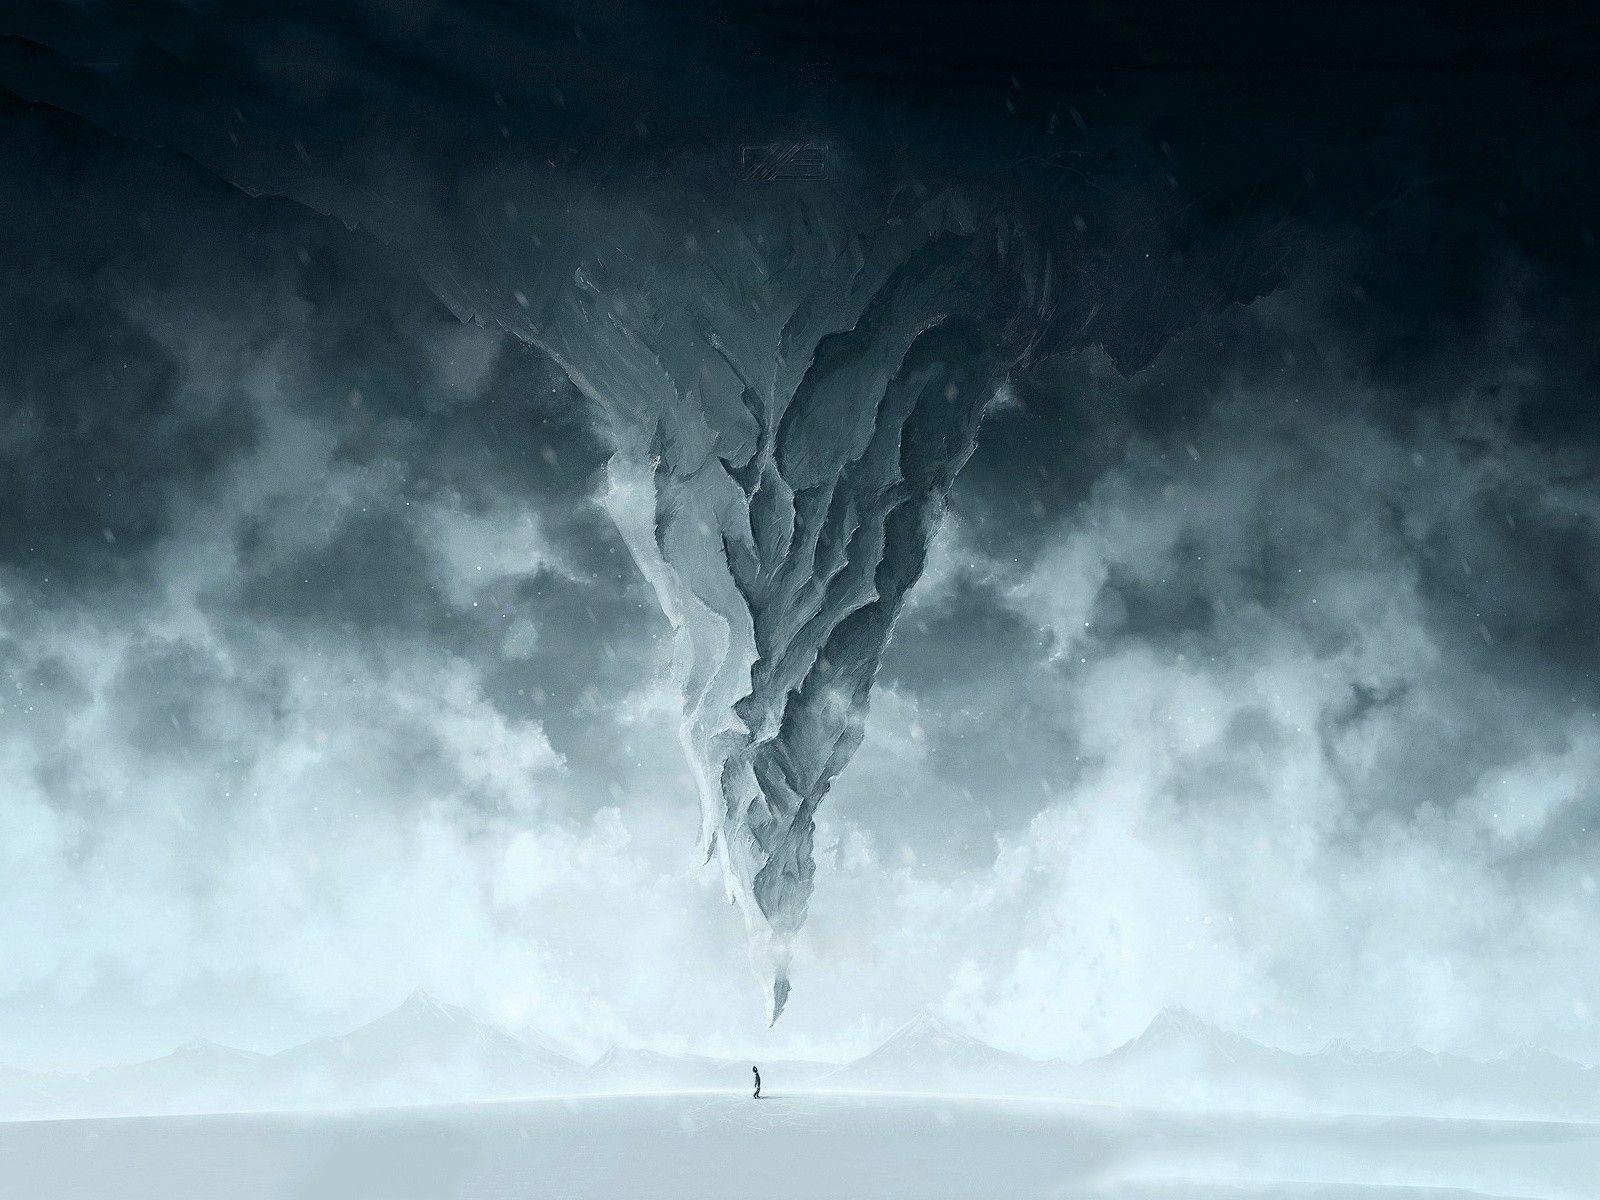 Snowstorm art Wallpaper